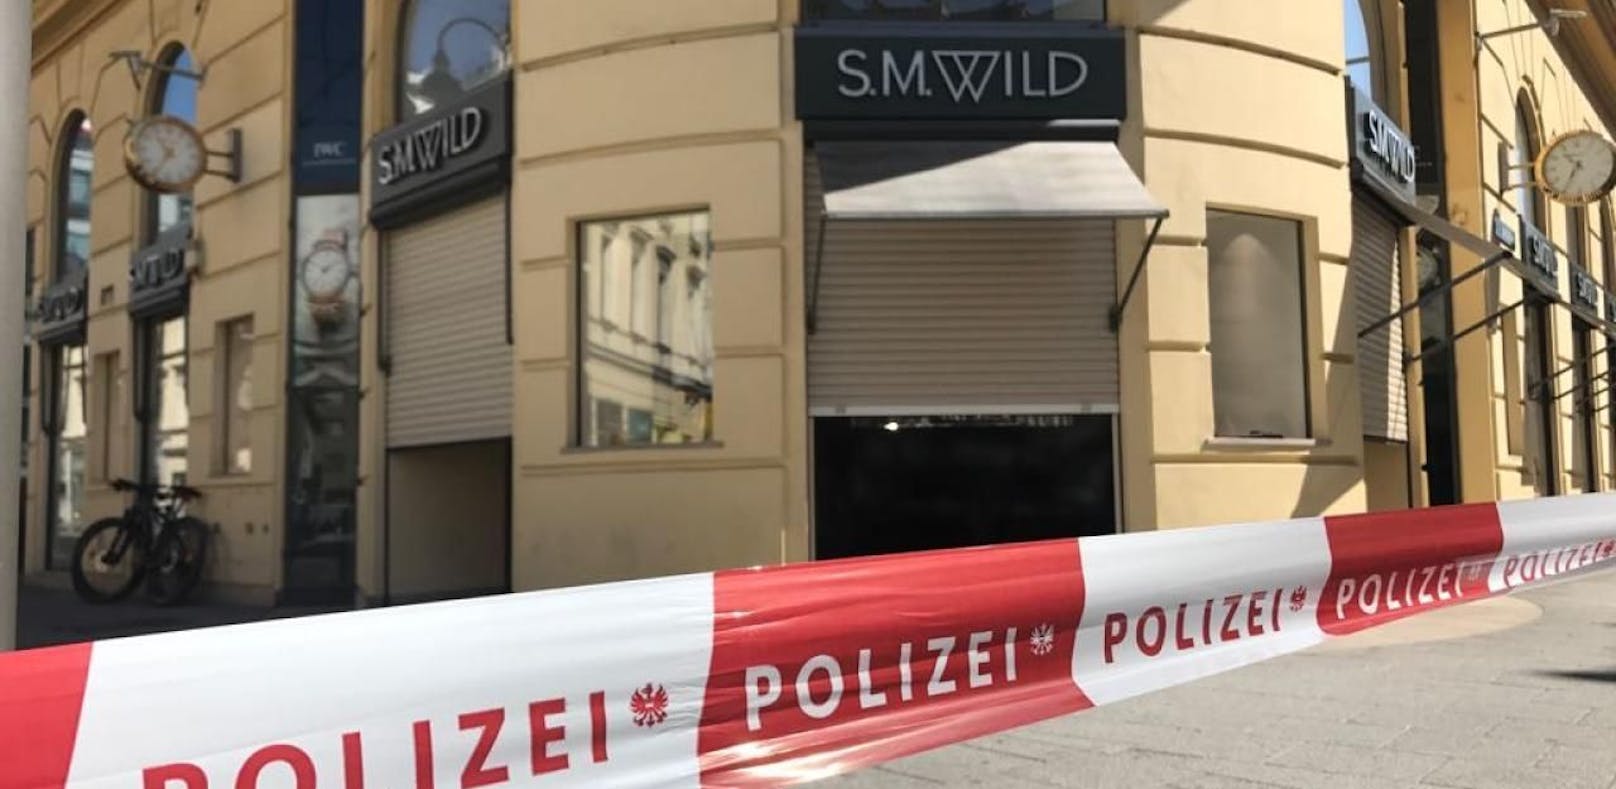 Der Juwelier &quot;Wild&quot; in der Linzer Landstraße wurde am Donnerstag kurz vor 10 Uhr überfallen. Die Polizei fahndet nach vier Tätern.